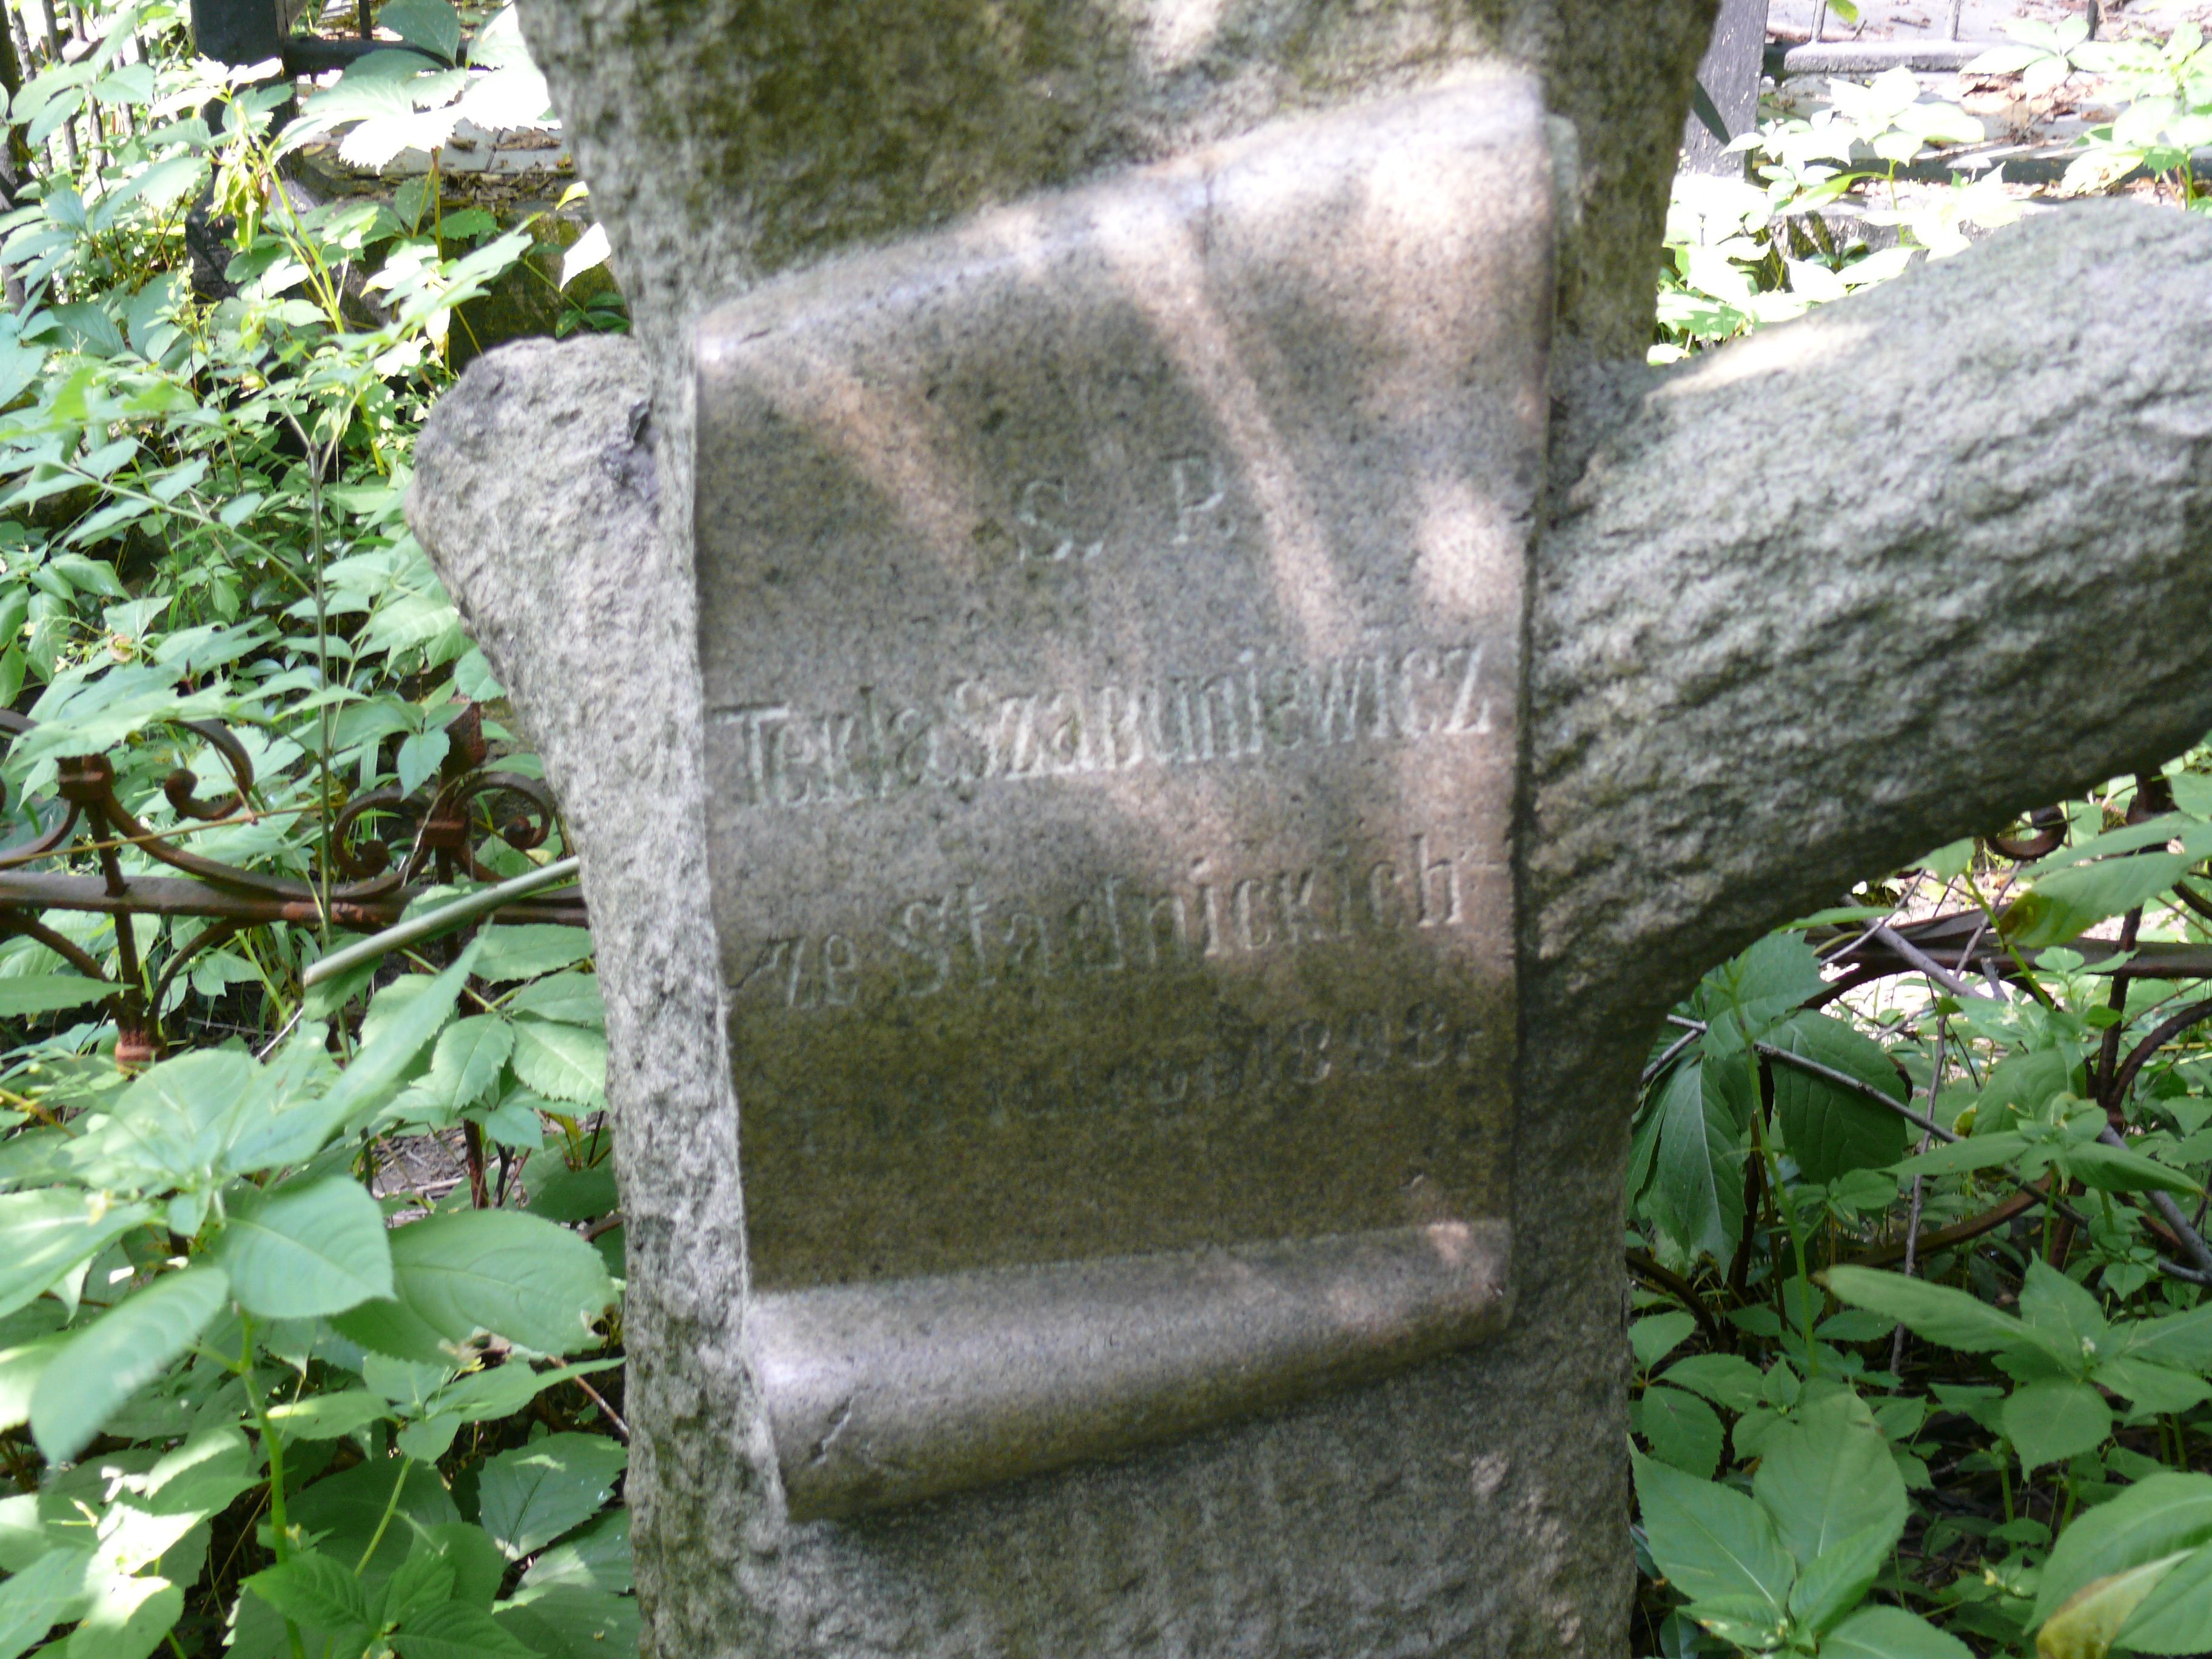 Inscription from the tombstone of Tekla Szabuniewicz